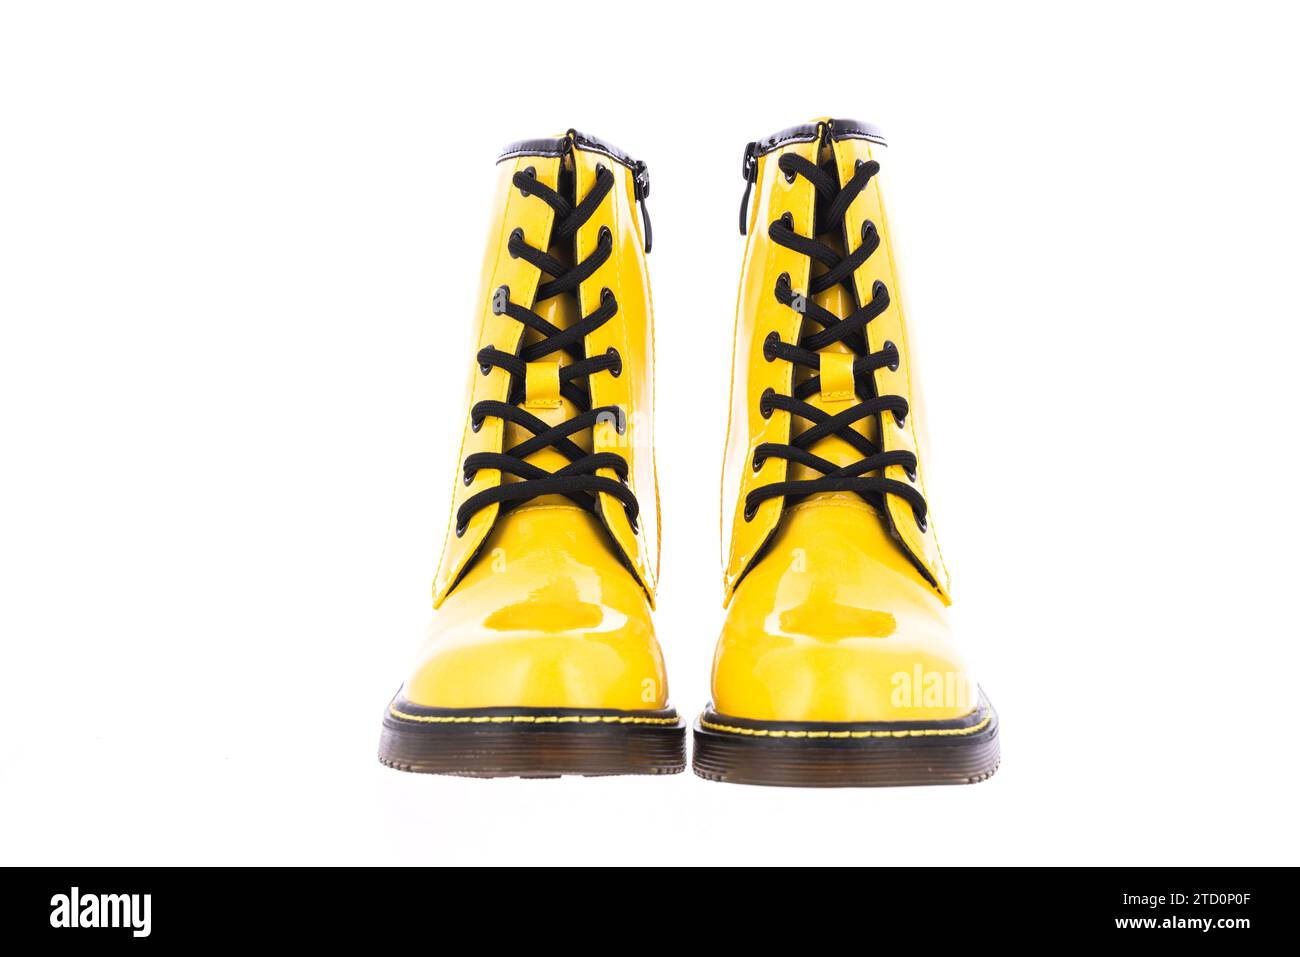 Scarpe Stivali moderni in pelle lucida gialla isolati su sfondo bianco Foto Stock